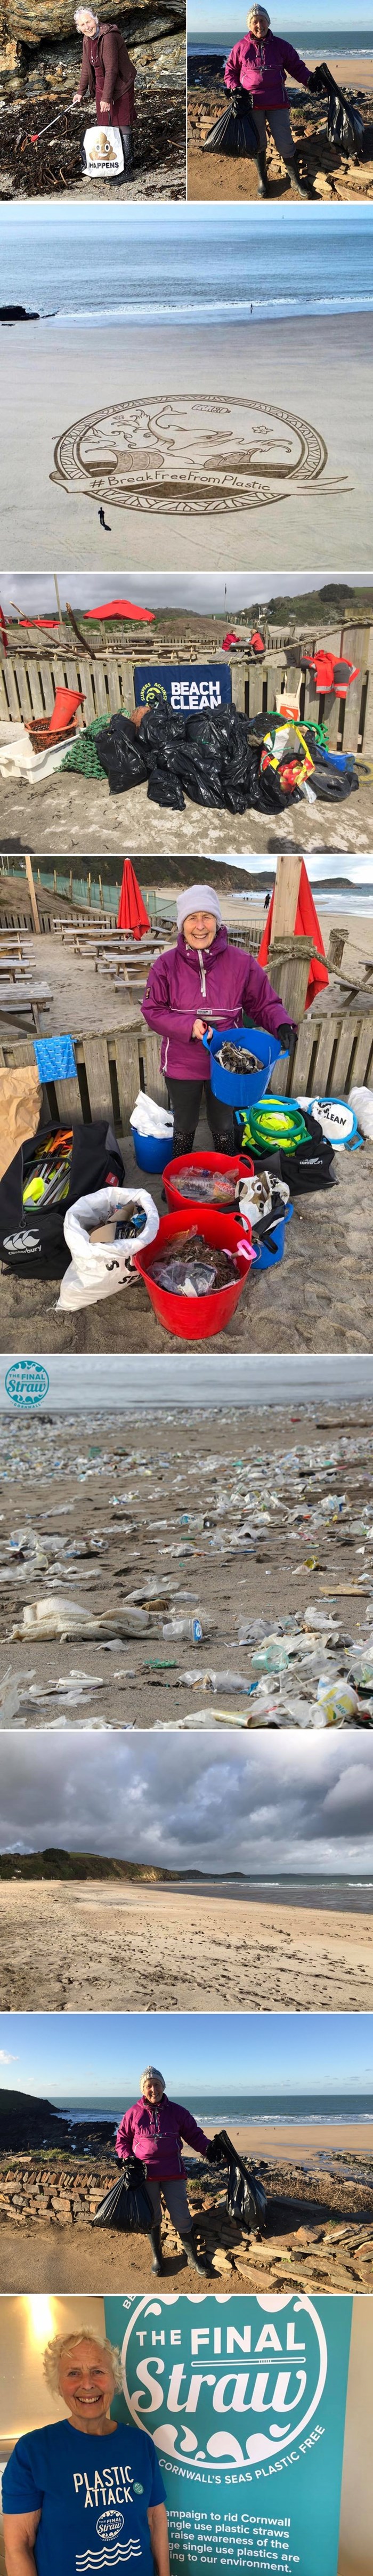 70-godišnja baka je u godinu dana očistila 52 plaže i dokazala da je uz malo truda prirodu moguće spasiti